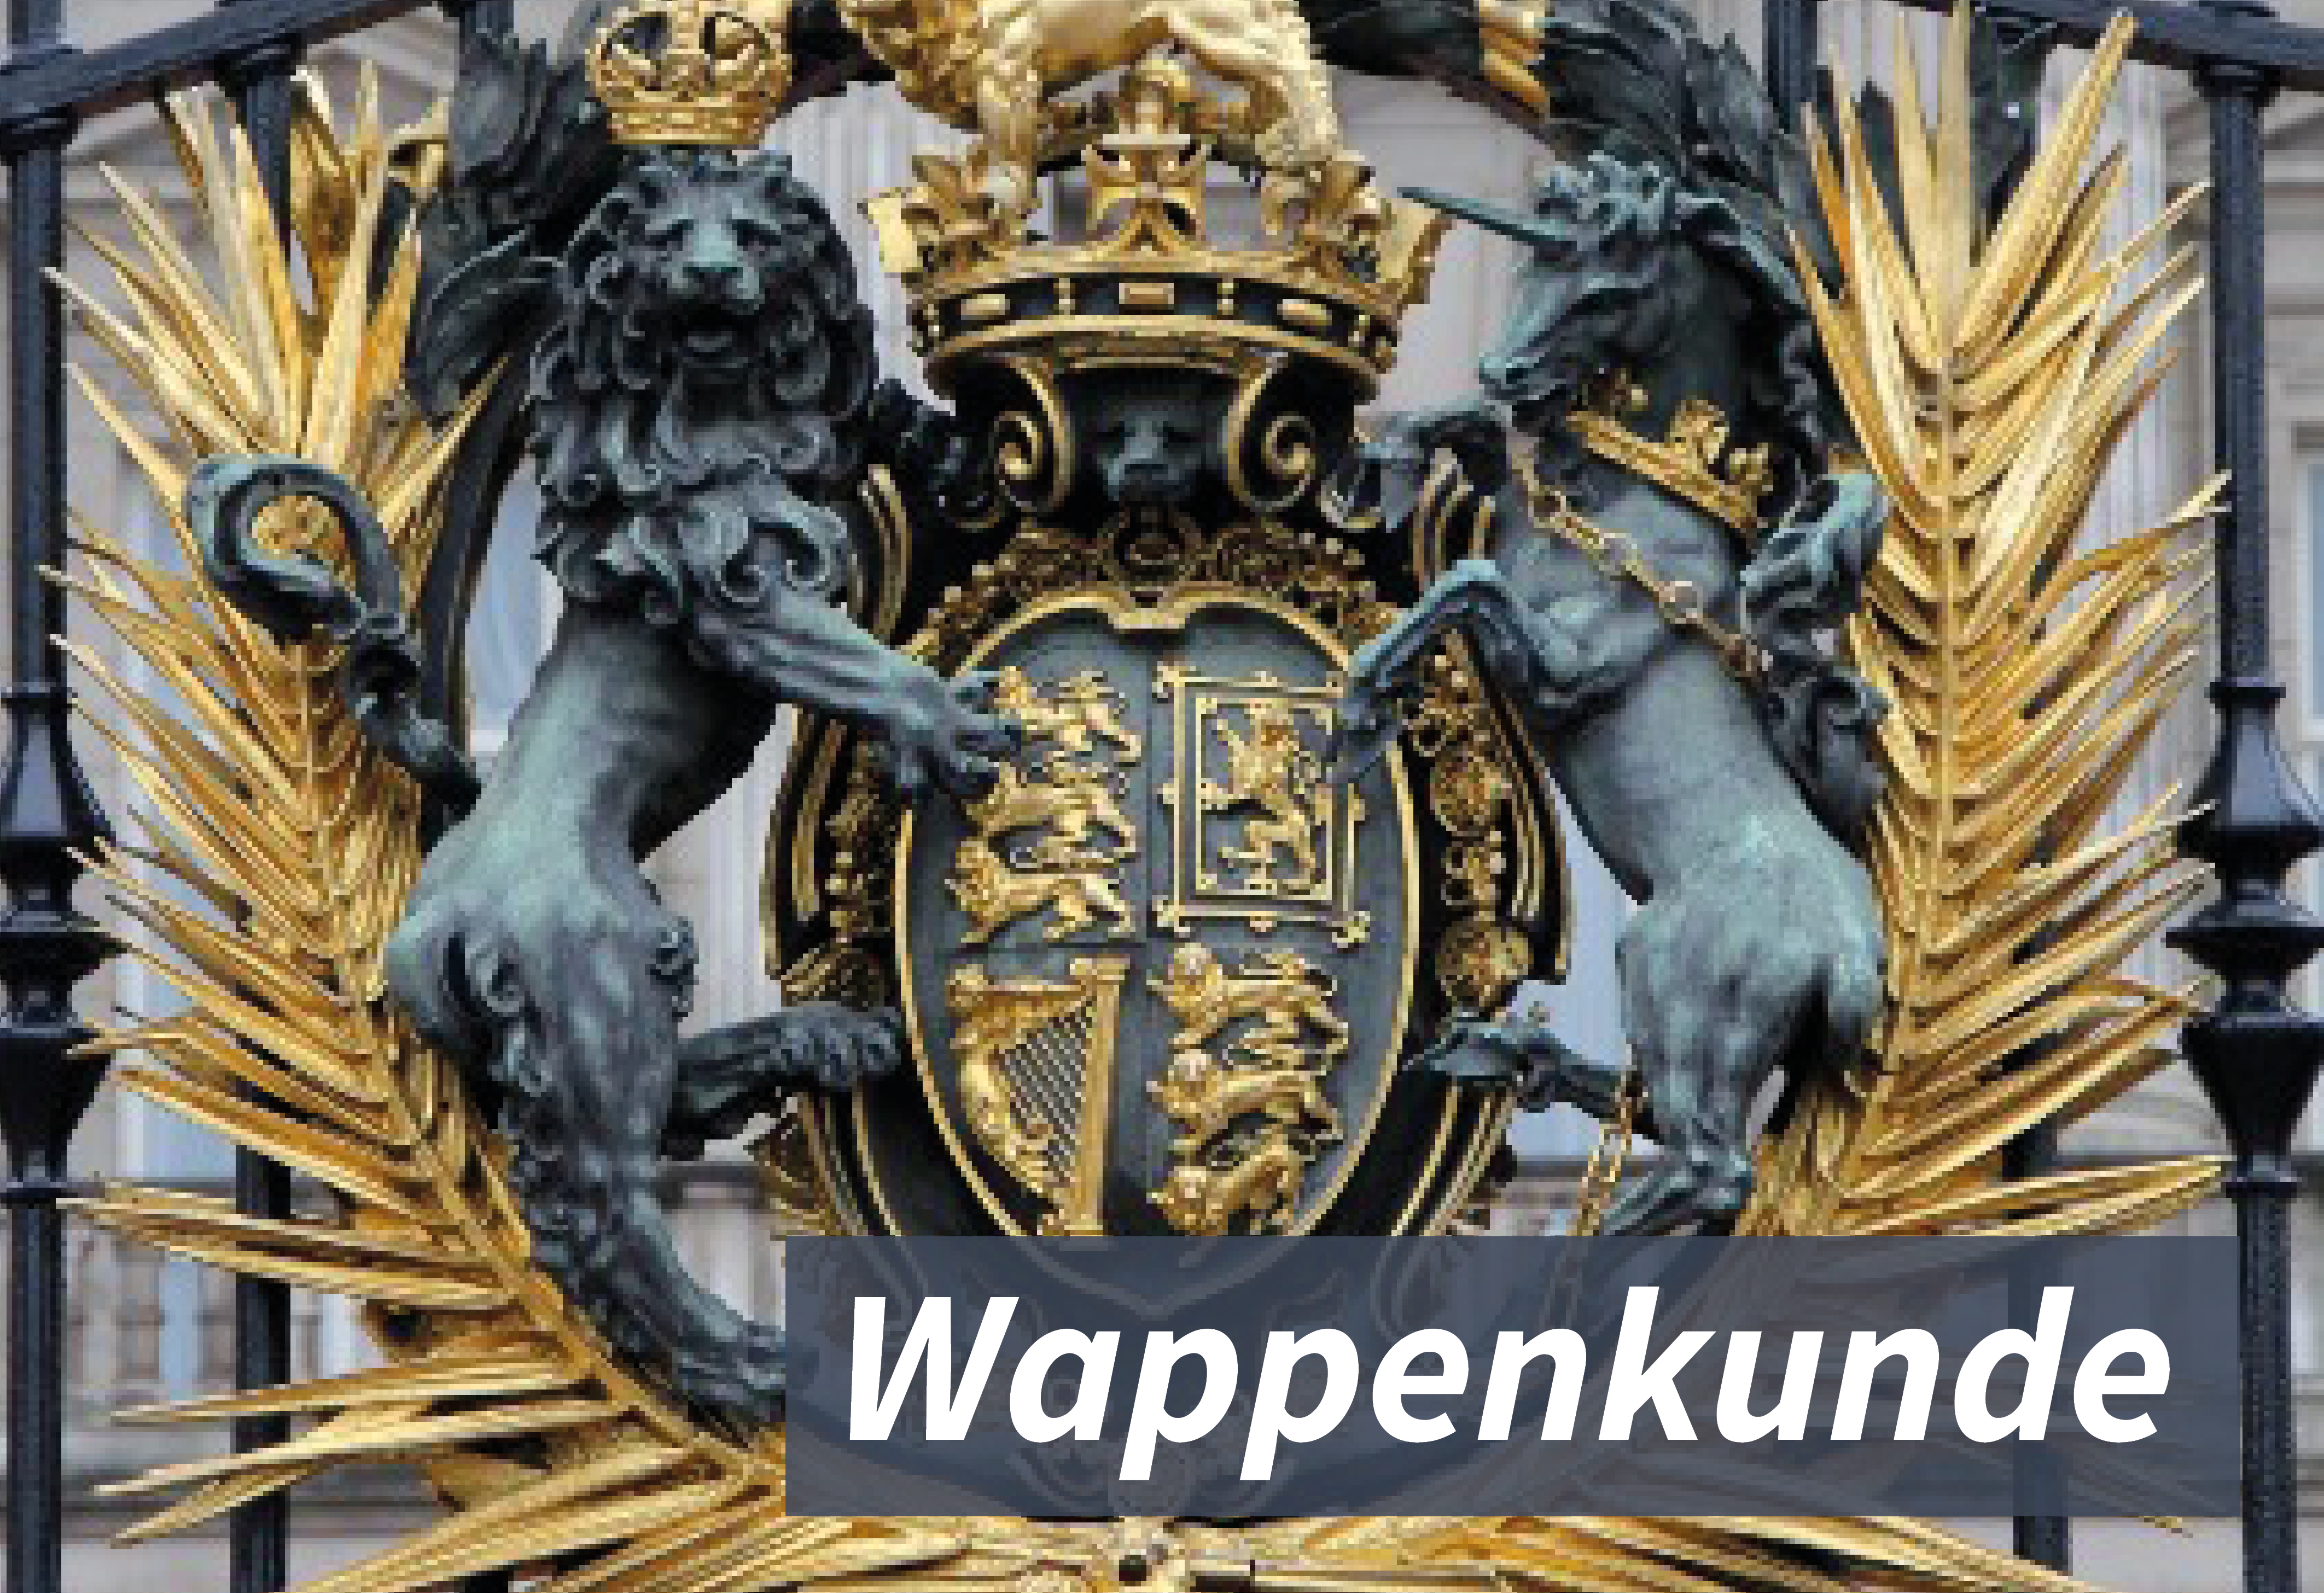 Abbildung eines Wappens an einem Palasttor in London. Zu sehen sind unter anderem eine Krone, zwei Löwen und ein Pferd. Das Wappen ist an einigen Stellen vergoldet.